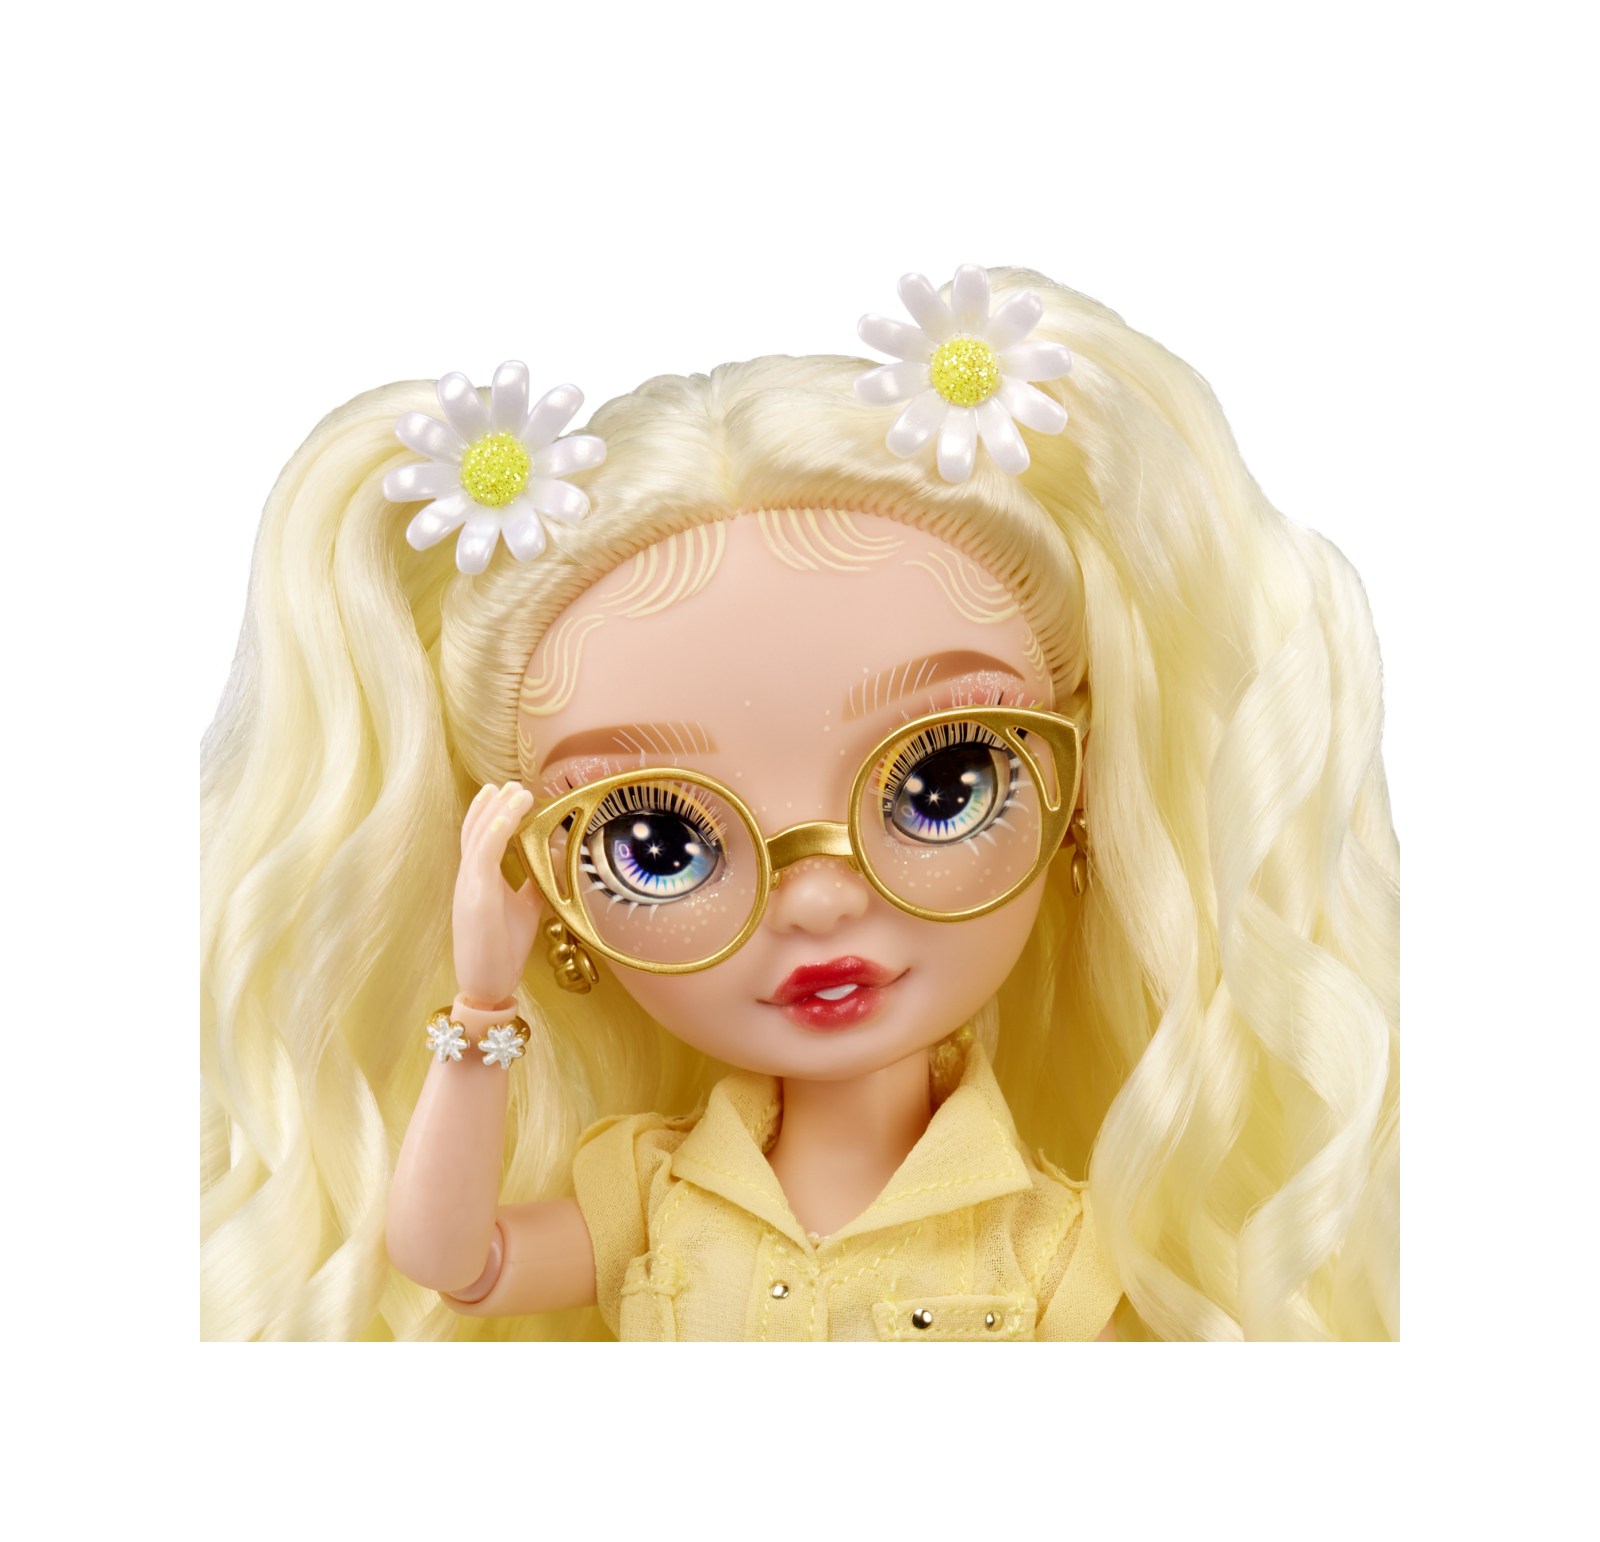 Rainbow high -  delilah fields - bambola alla moda color giallo - con albinismo e occhiali - include 2 abiti mix & match con accessori - Rainbow High